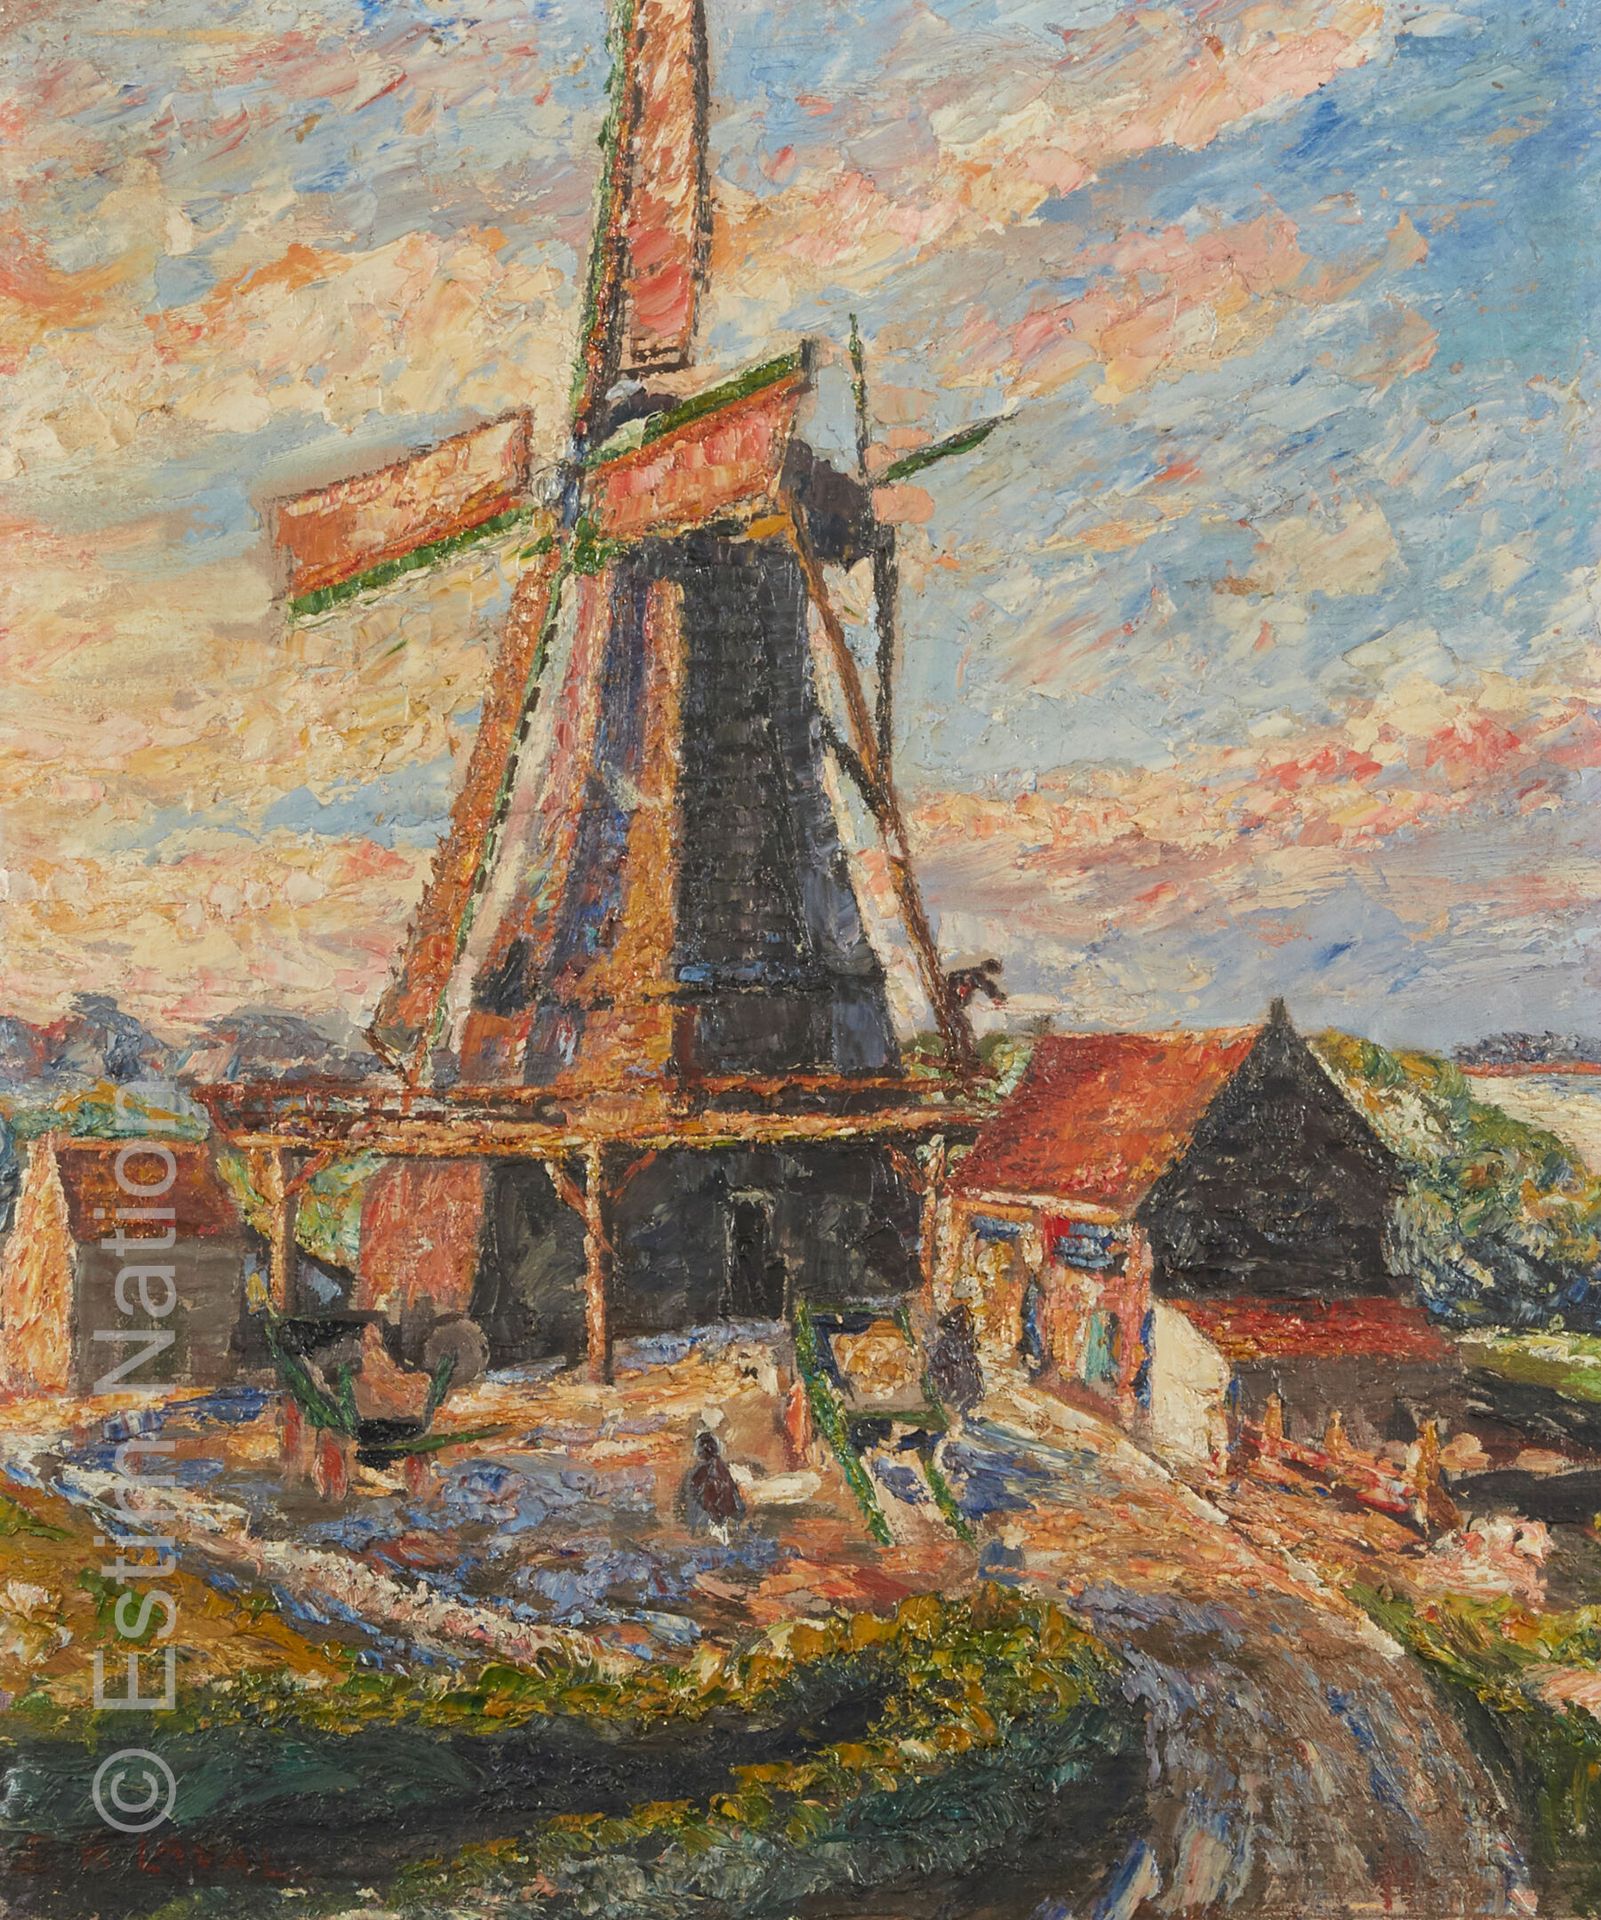 ART DU XXE SIECLE - LAVAL Fernand LAVAL (1886/95-1966)



Le moulin



Huile sur&hellip;